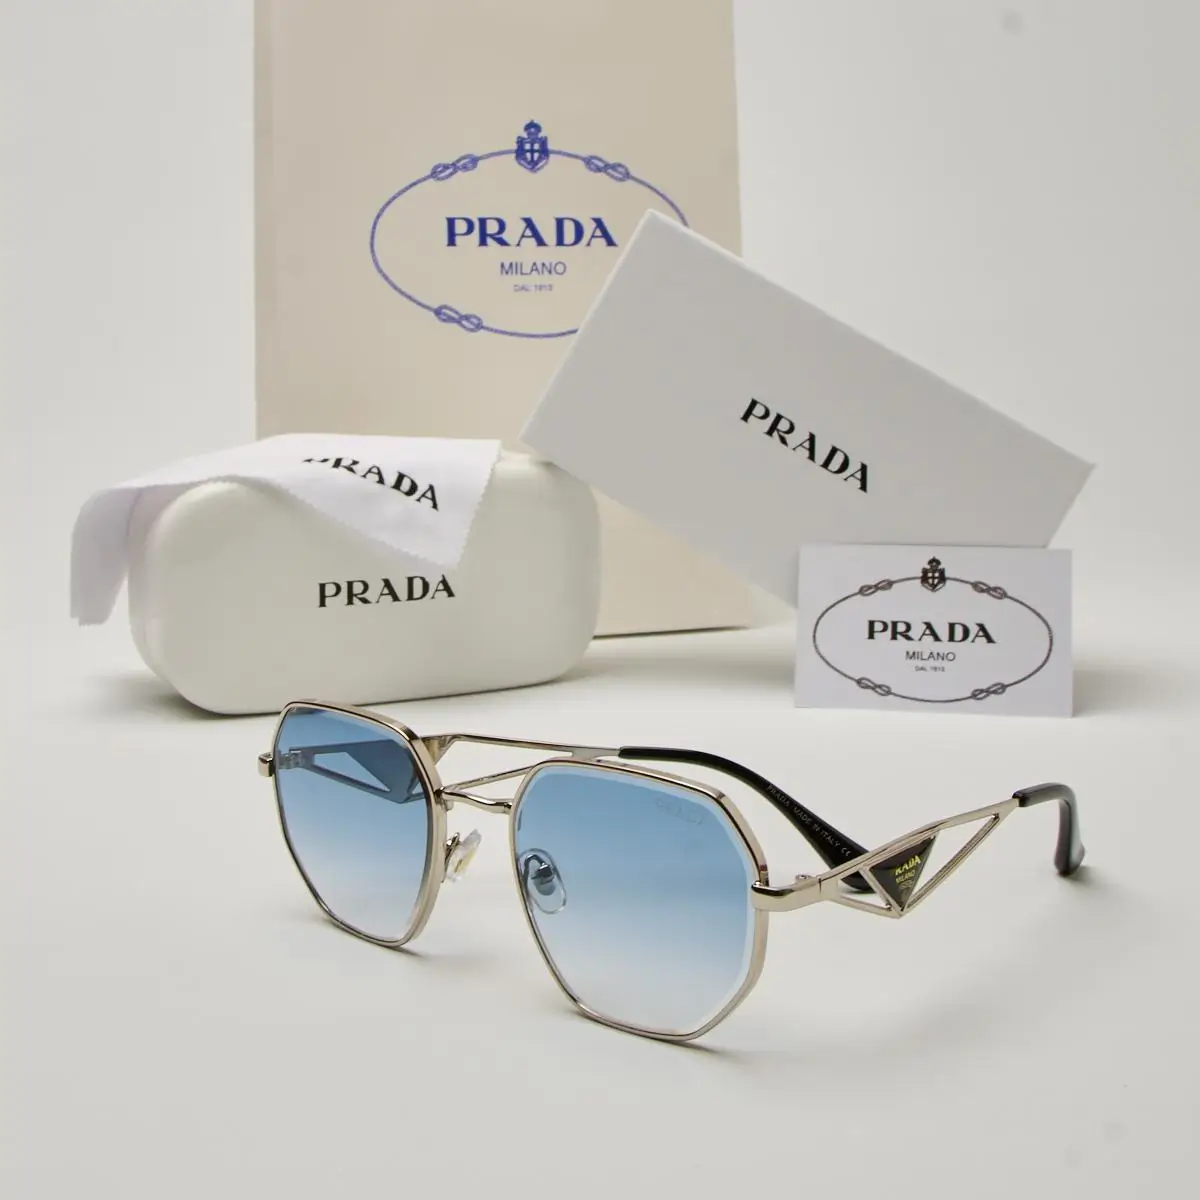 نظارات برادا الجديدة